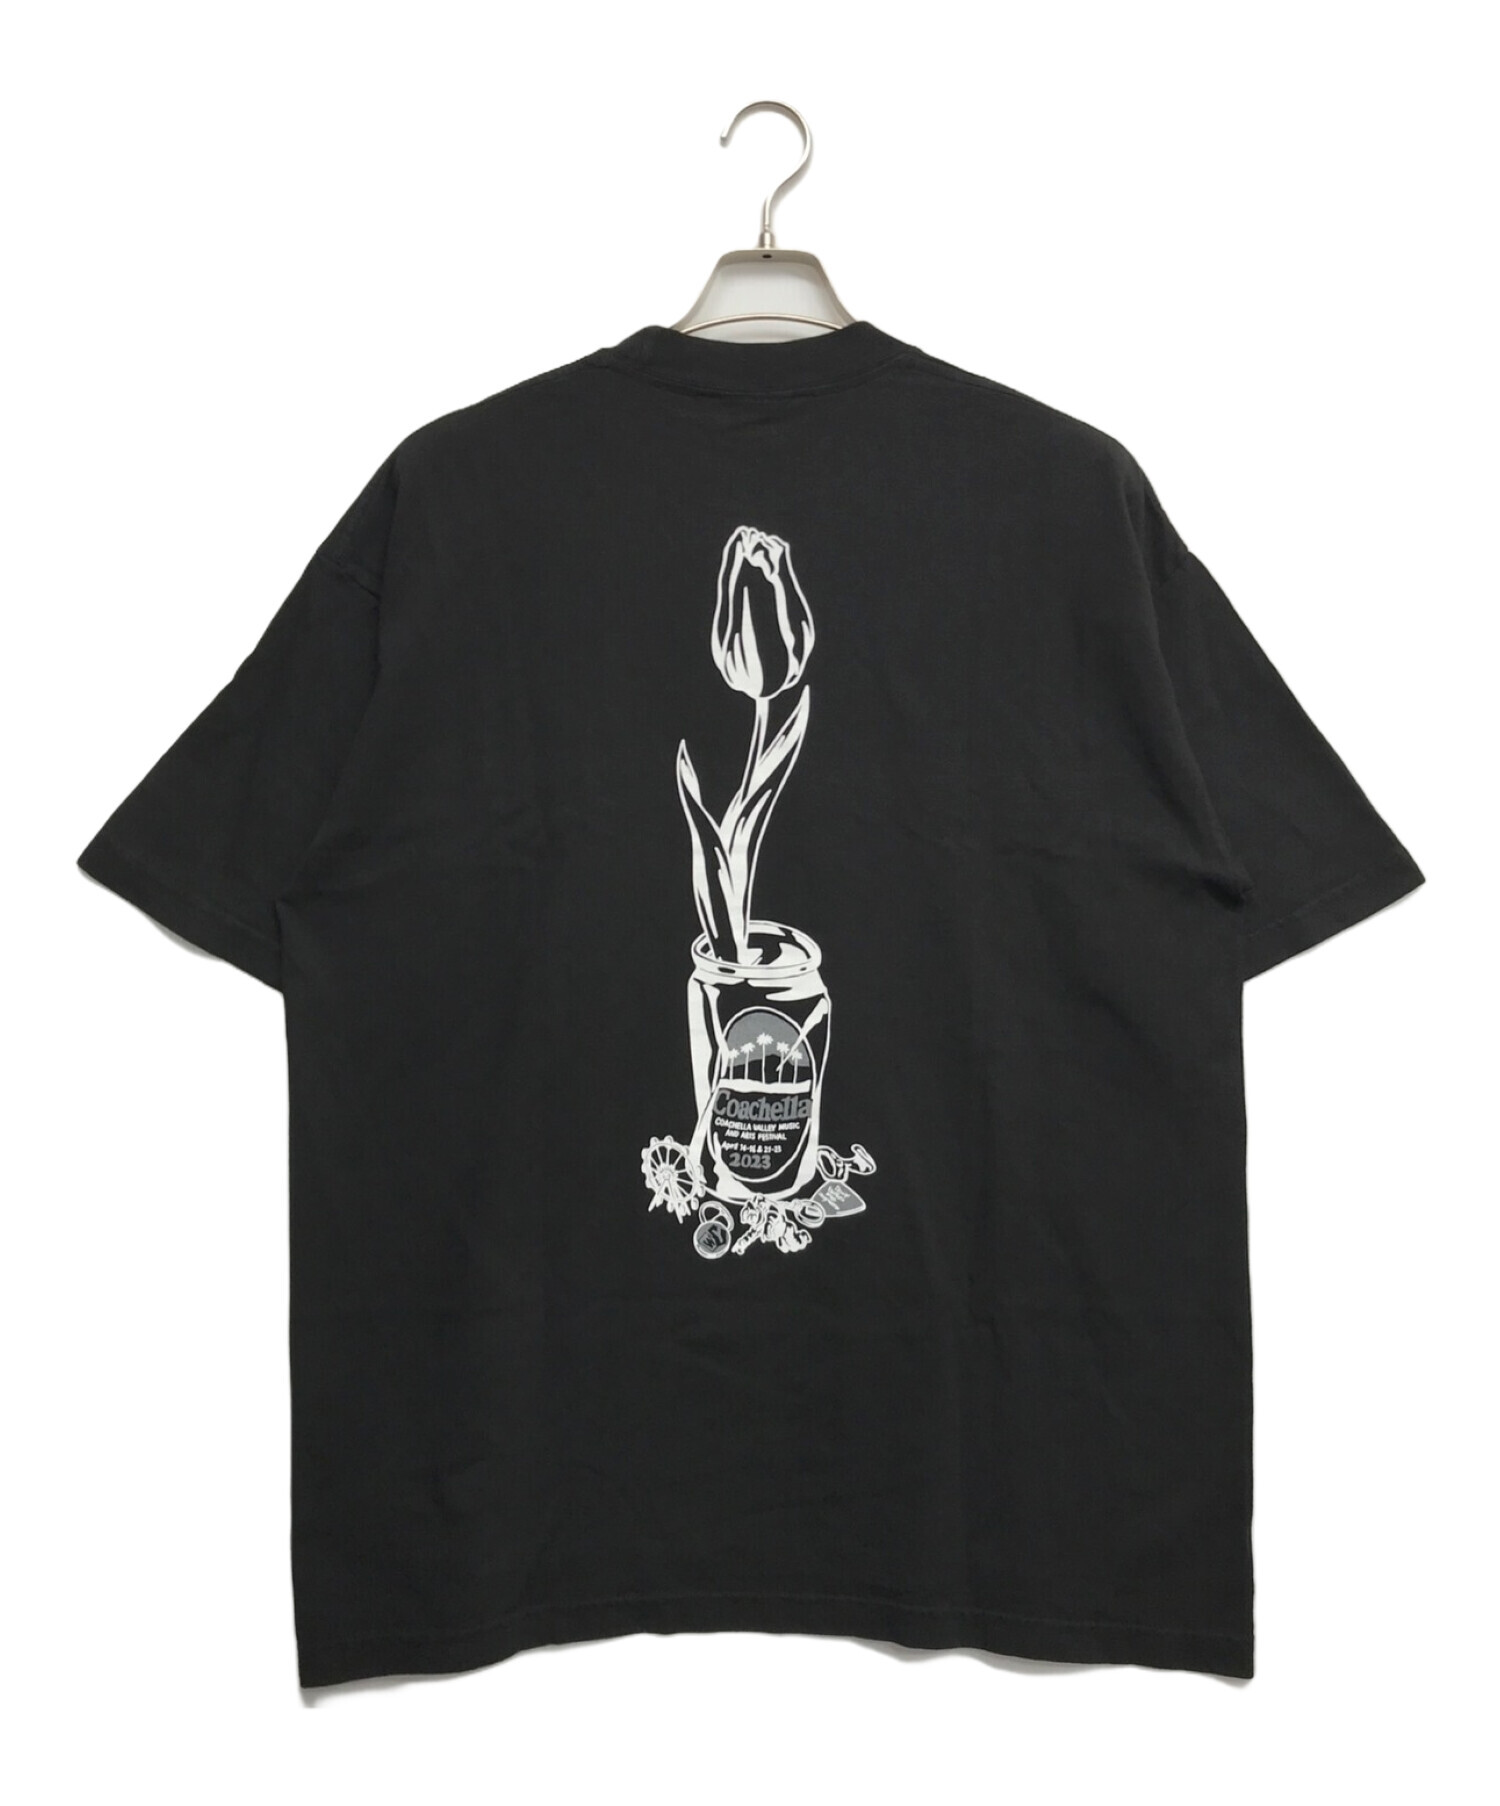 WASTED YOUTH (ウエステッド ユース) Coachella コラボプリントTシャツ ブラック サイズ:L